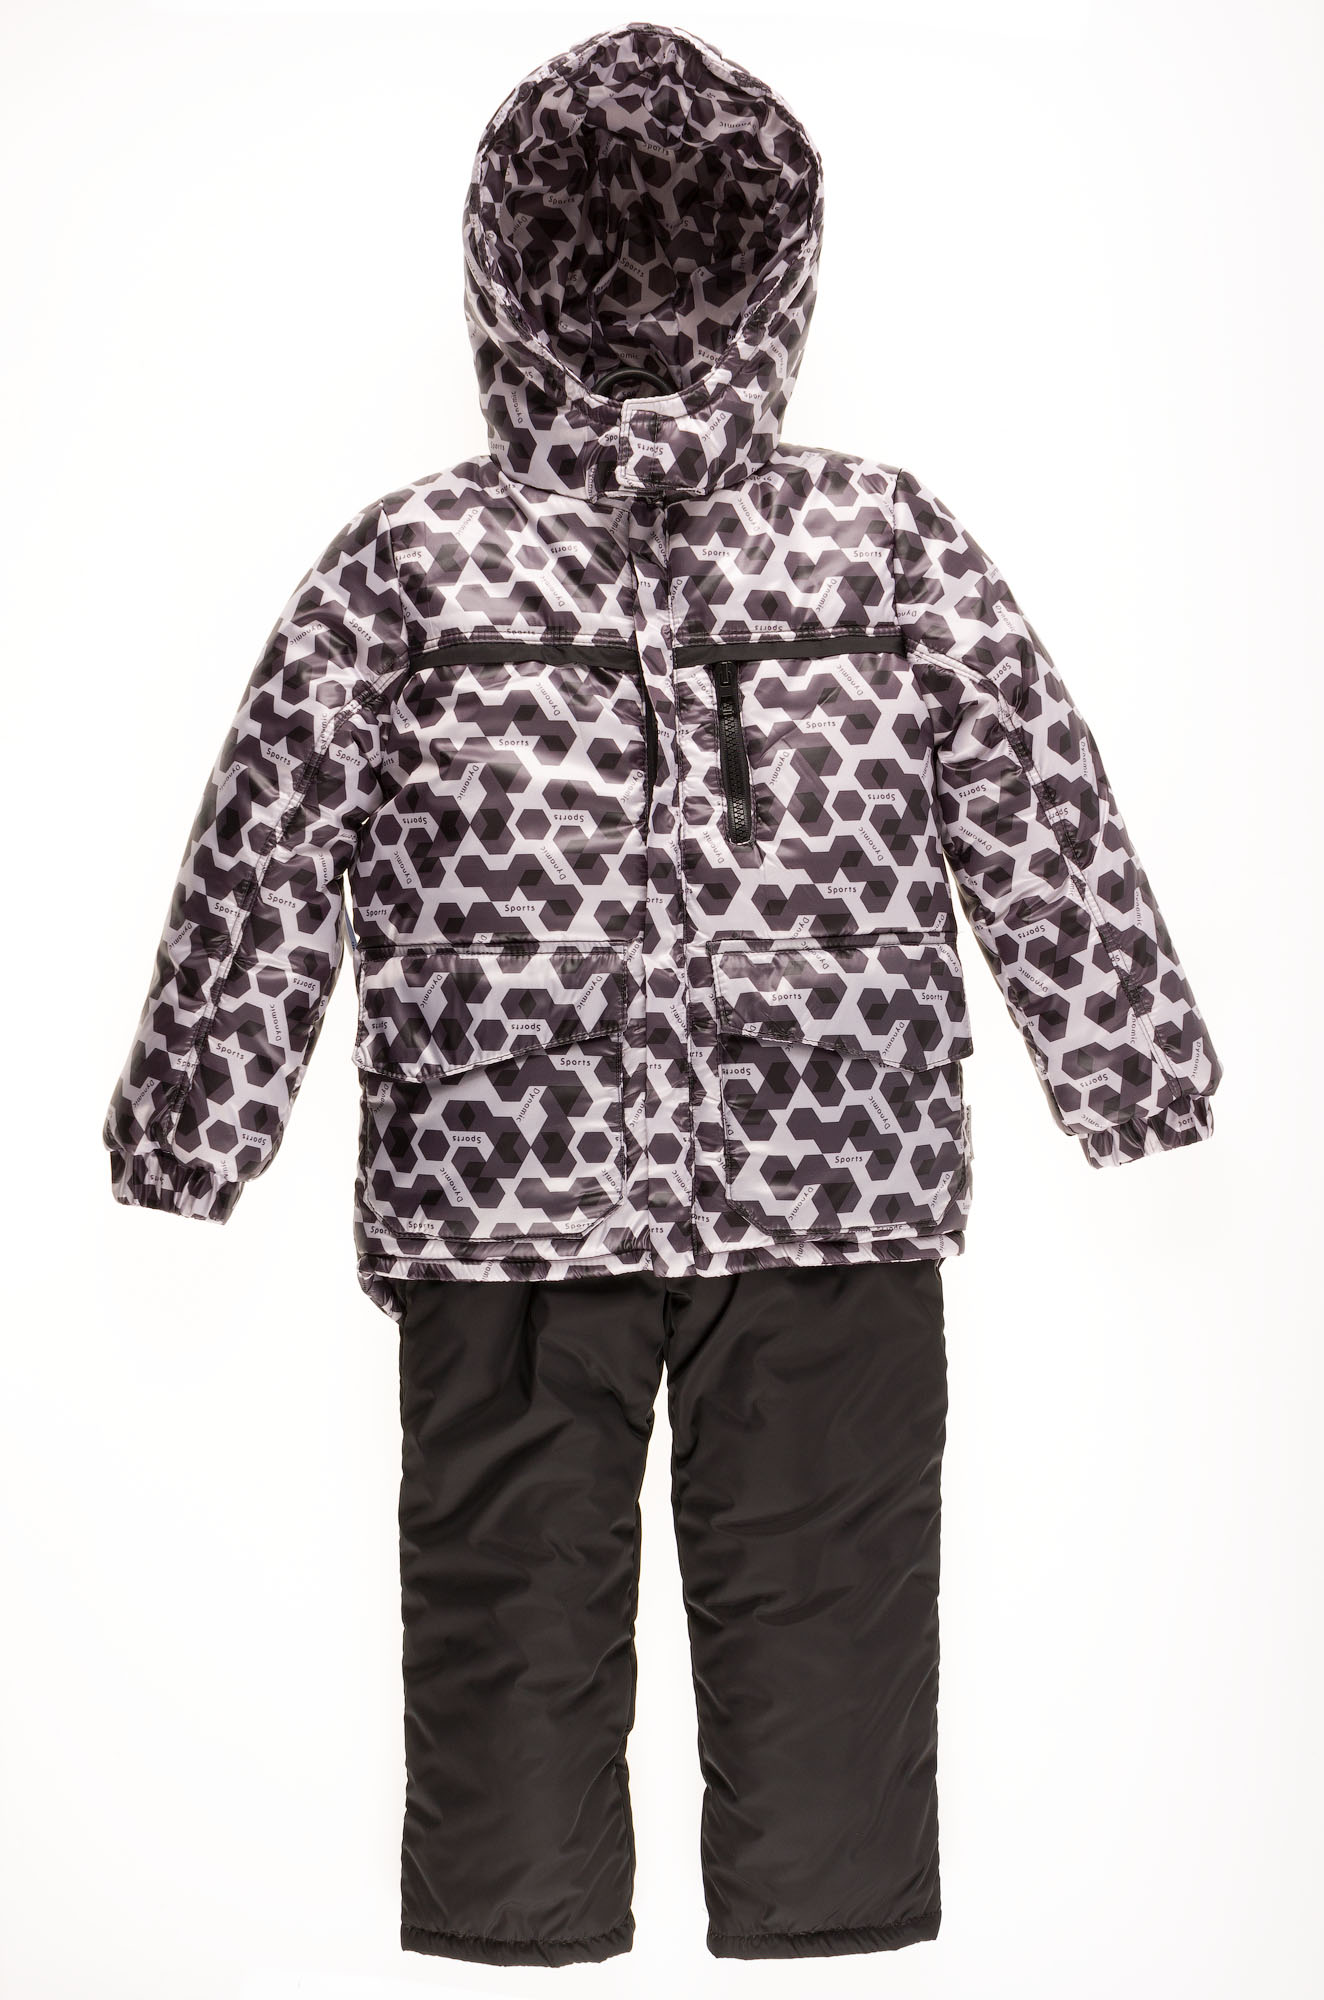 Комбінезон зимовий роздільний для хлопчика (куртка + штани) Одягайко геометрія чорний 20088 + 01241О - ціна